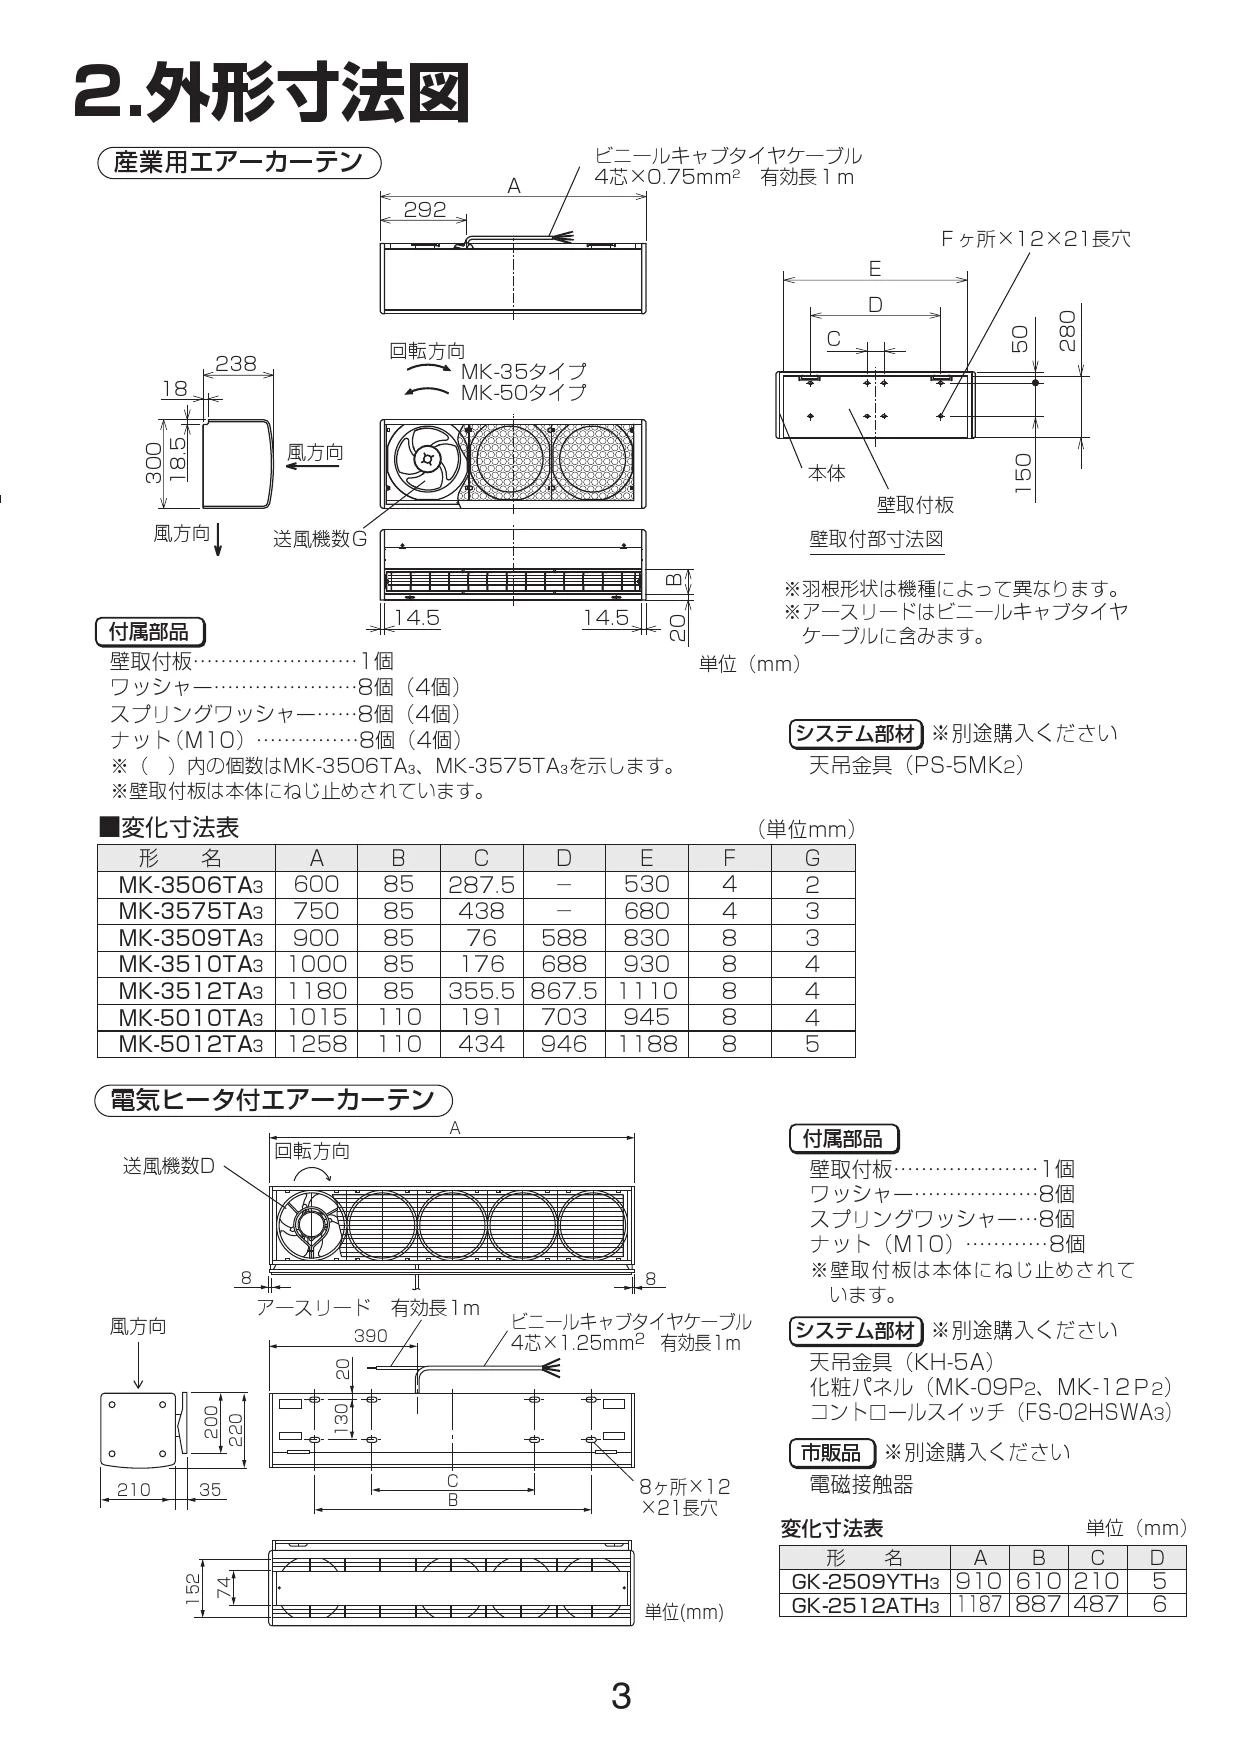 三菱電機 MK-5012TA3 取扱説明書 施工説明書 納入仕様図|三菱電機 ...